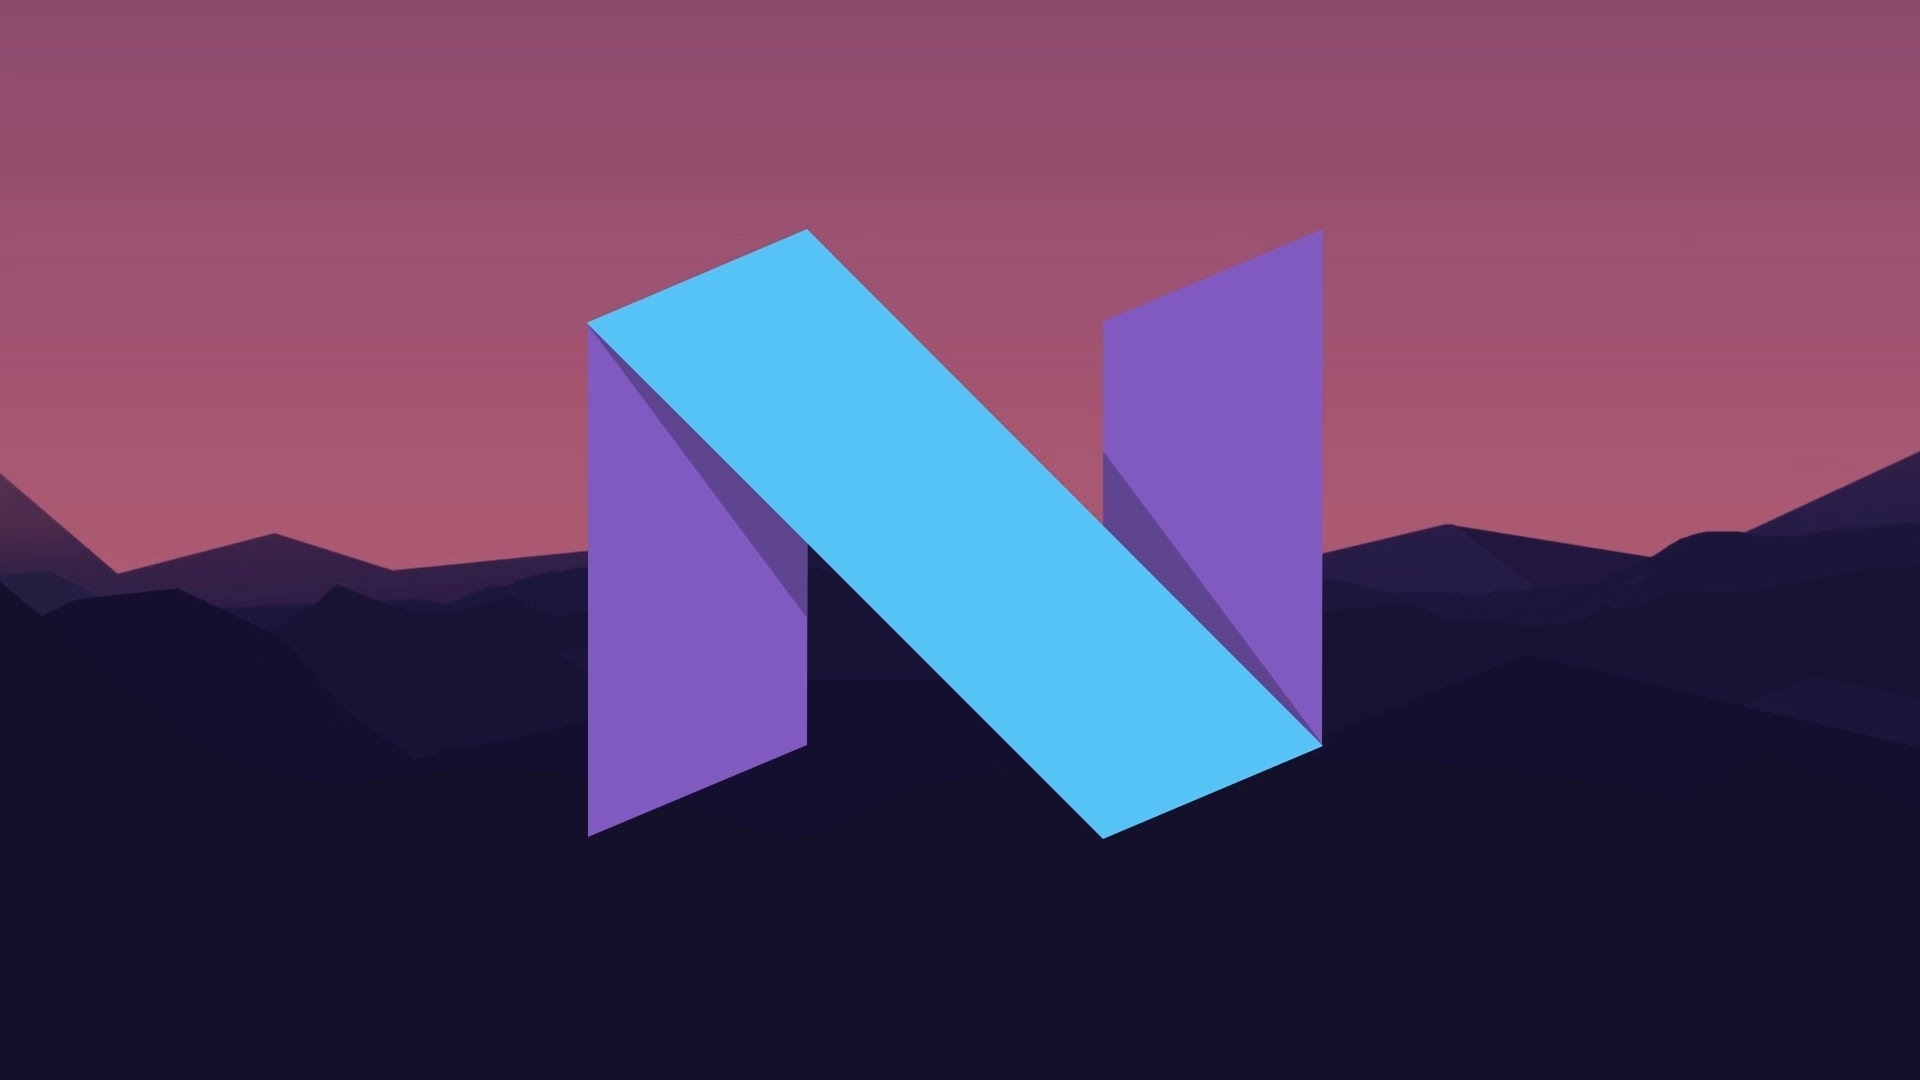 Google lôi kéo người dùng iOS bằng tính năng mới trên Android Nougat